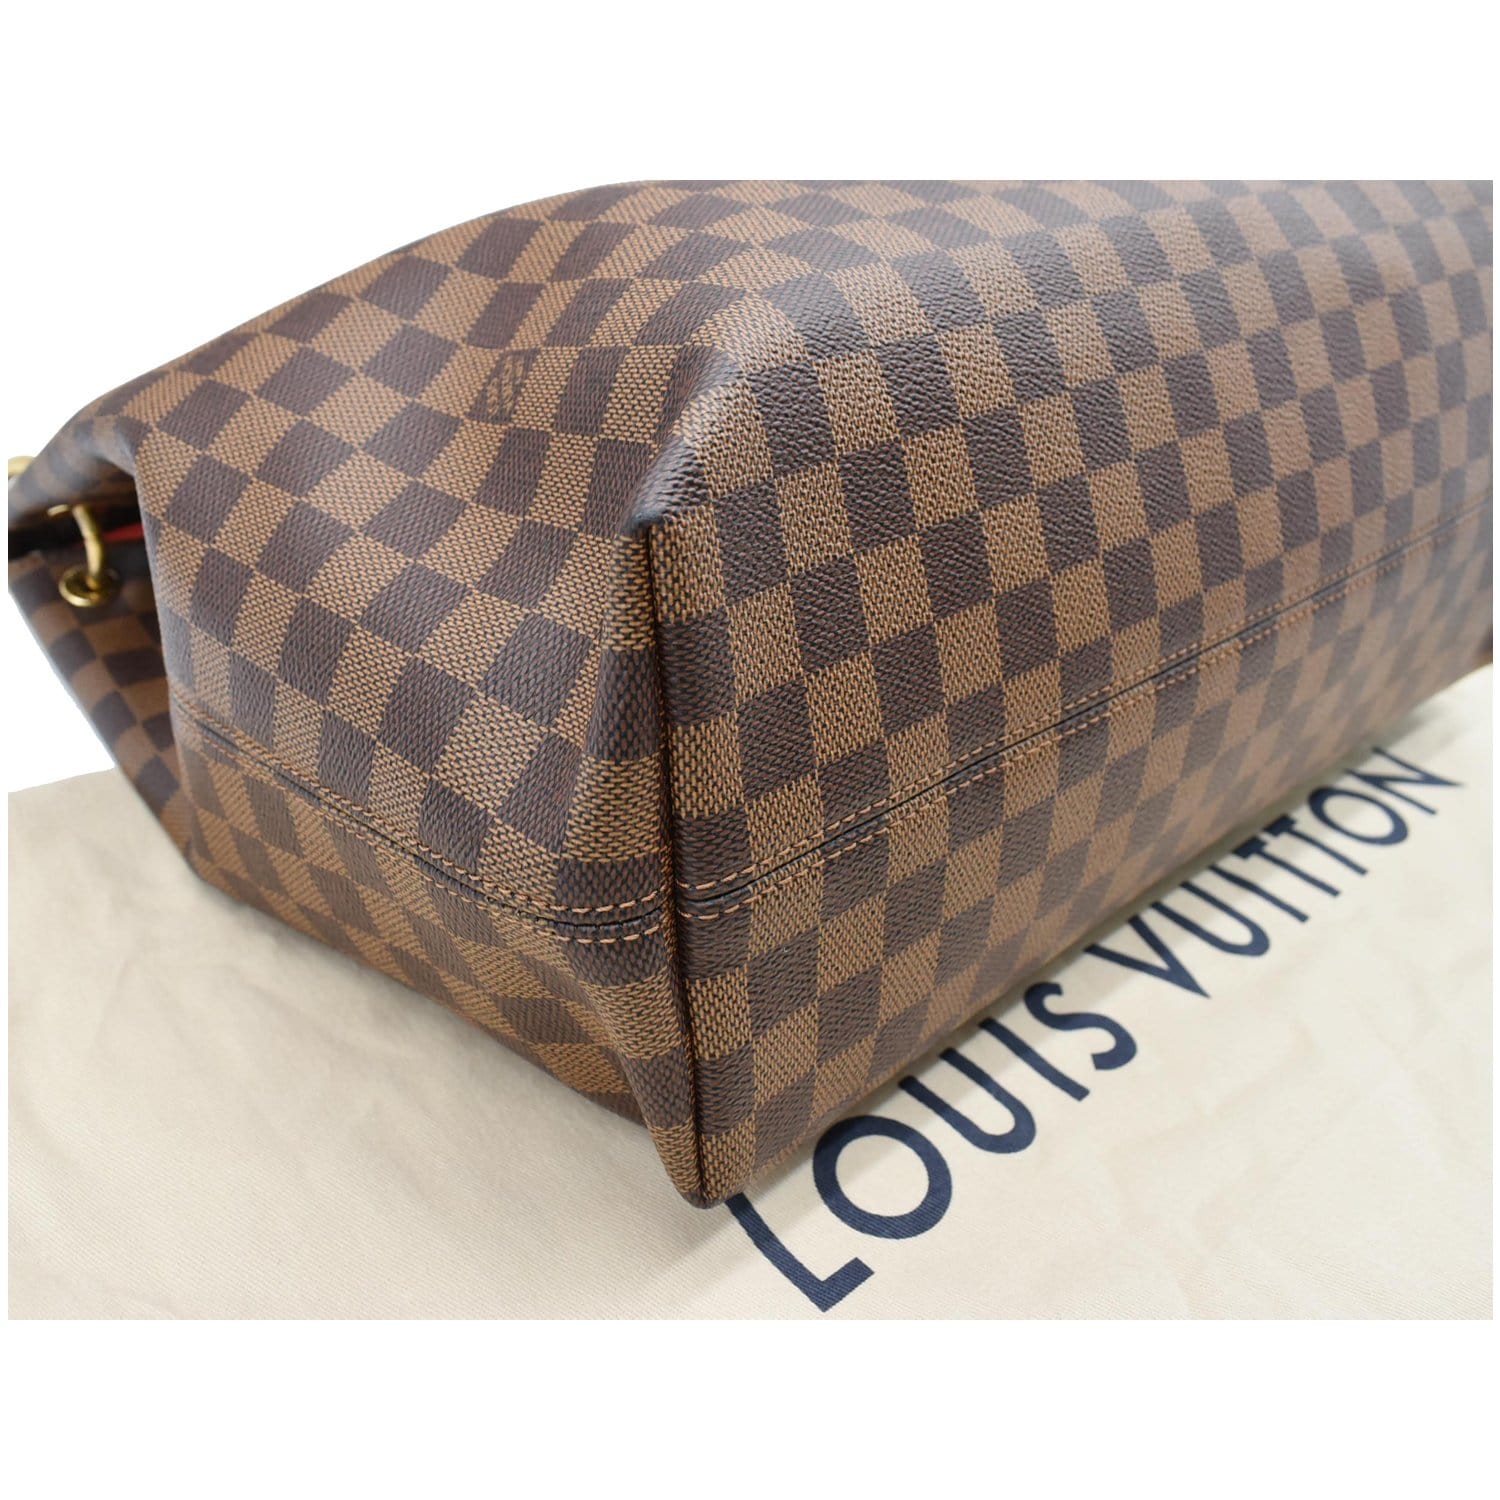 Louis Vuitton 2015 pre-owned Damier Ebène District MM Shoulder Bag